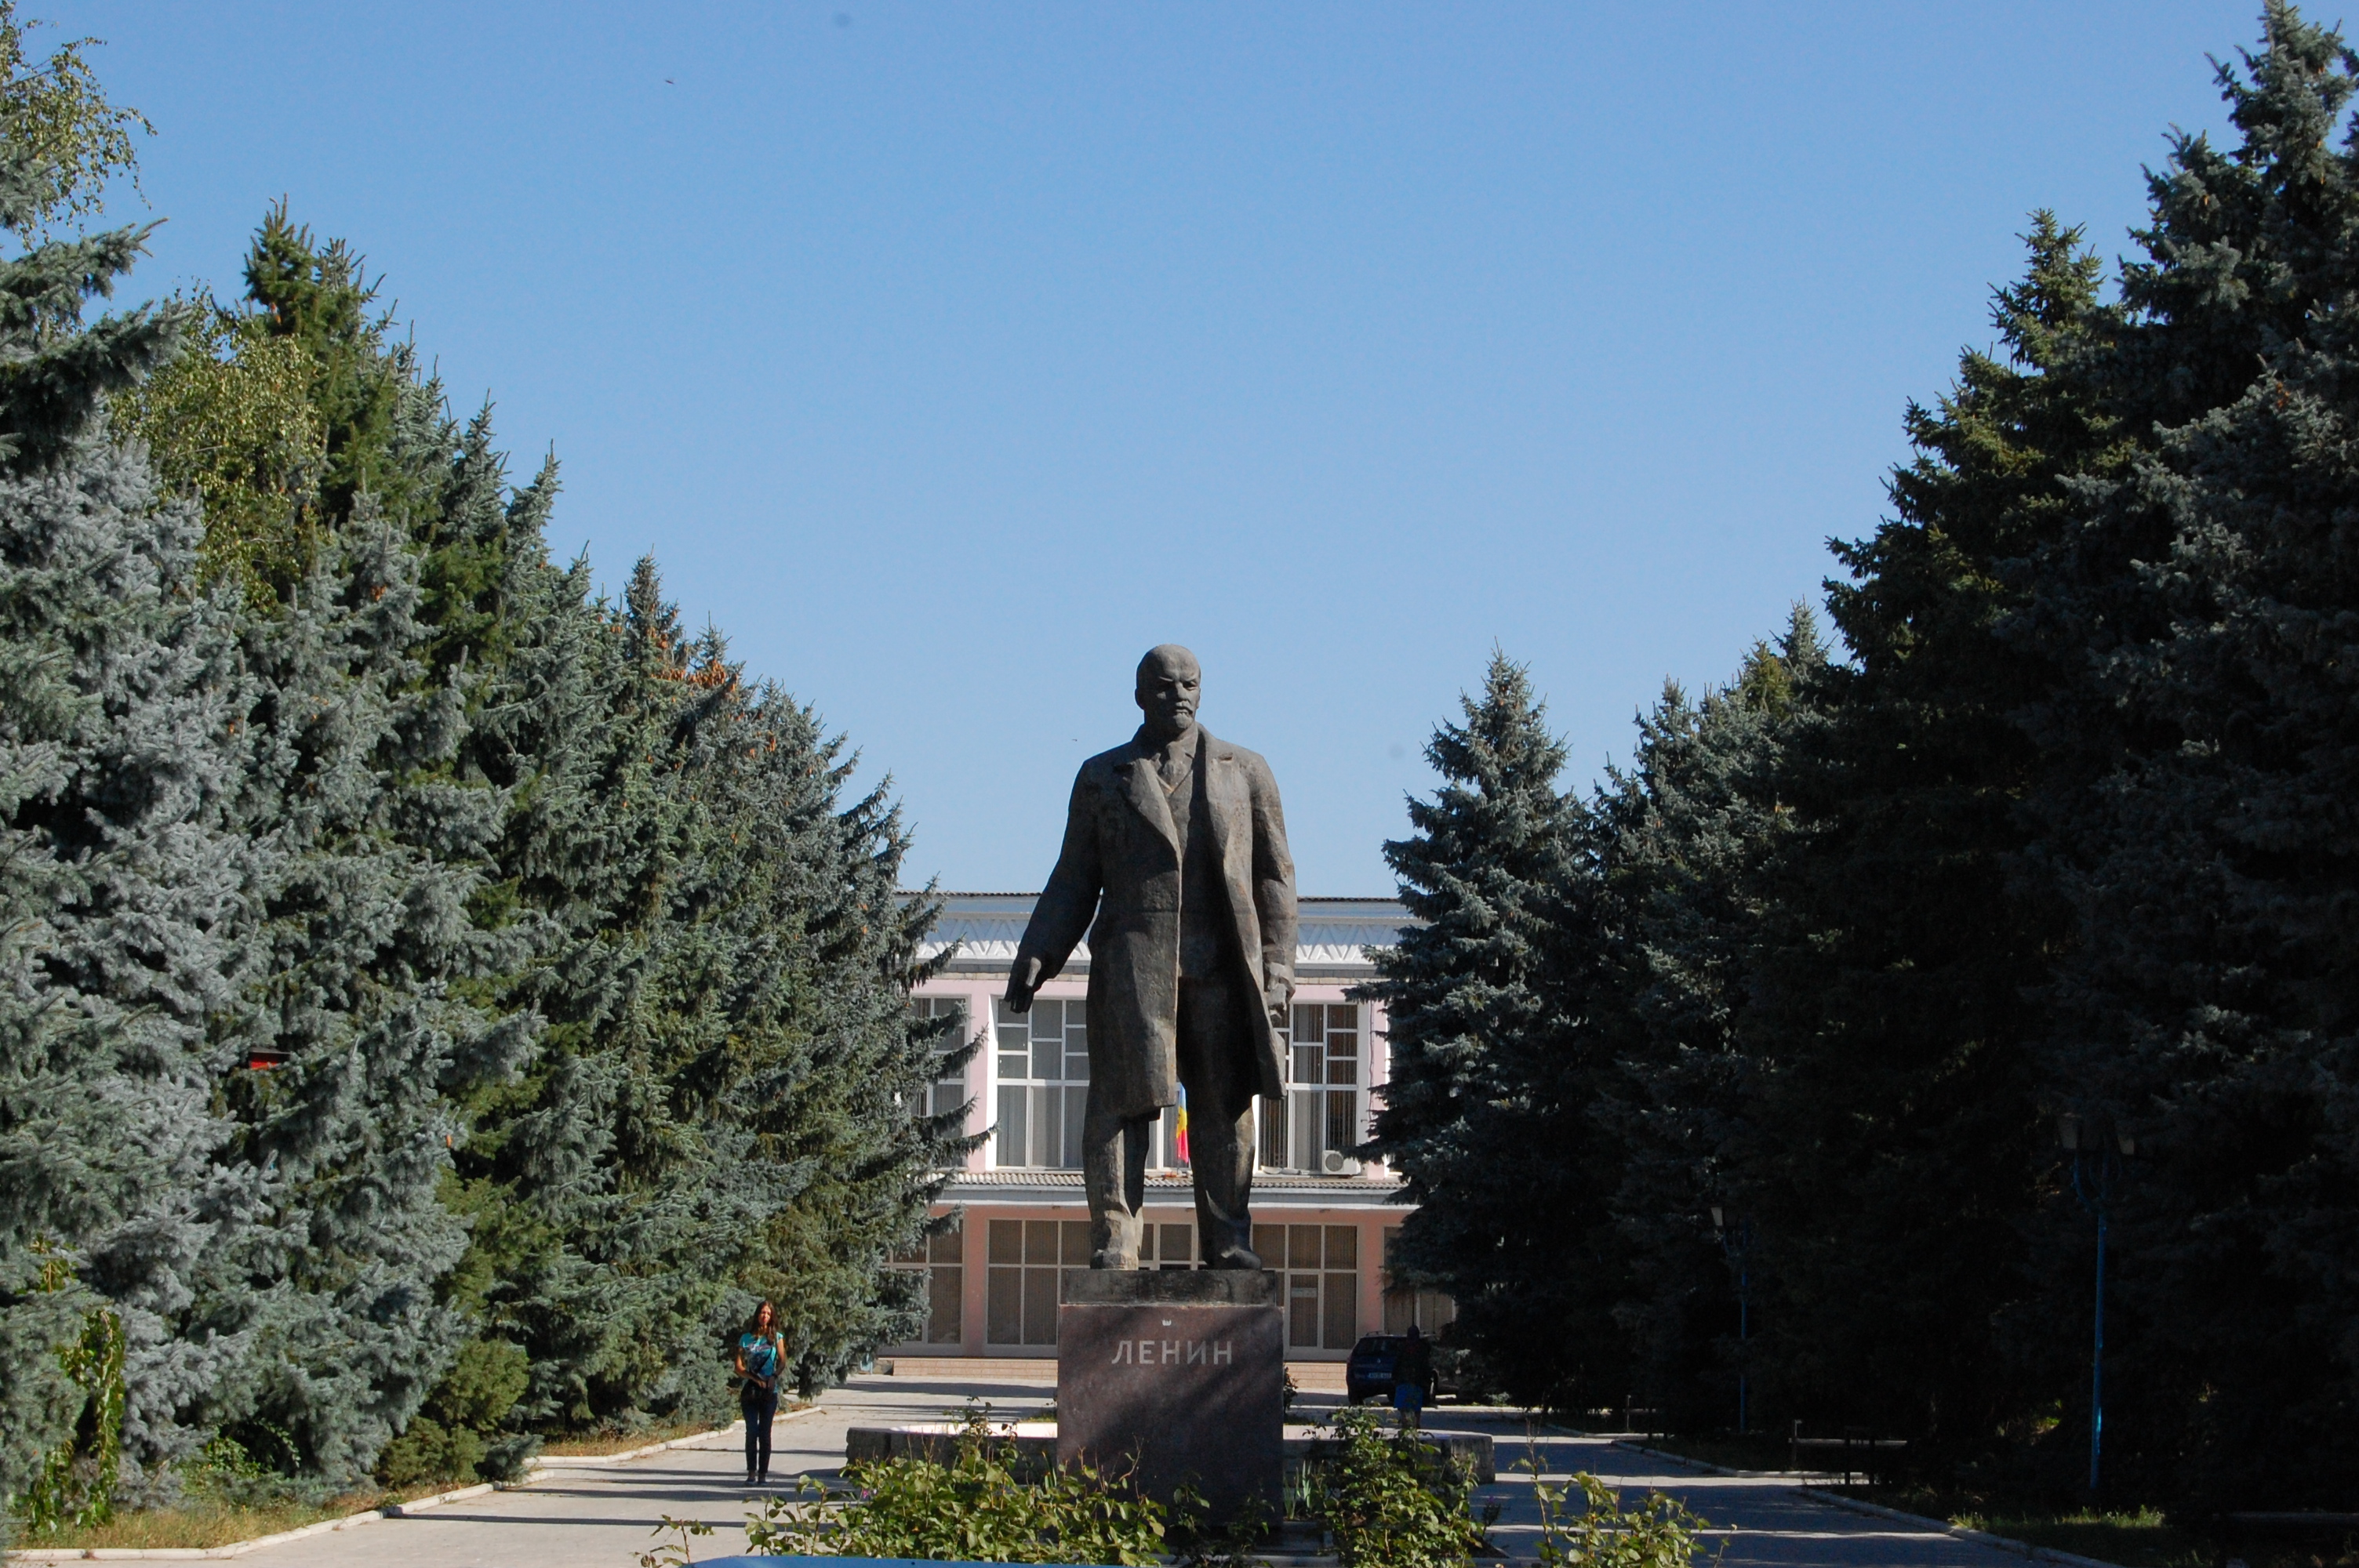 MD, Orasul Anenii Noi, Monument lui Lenin